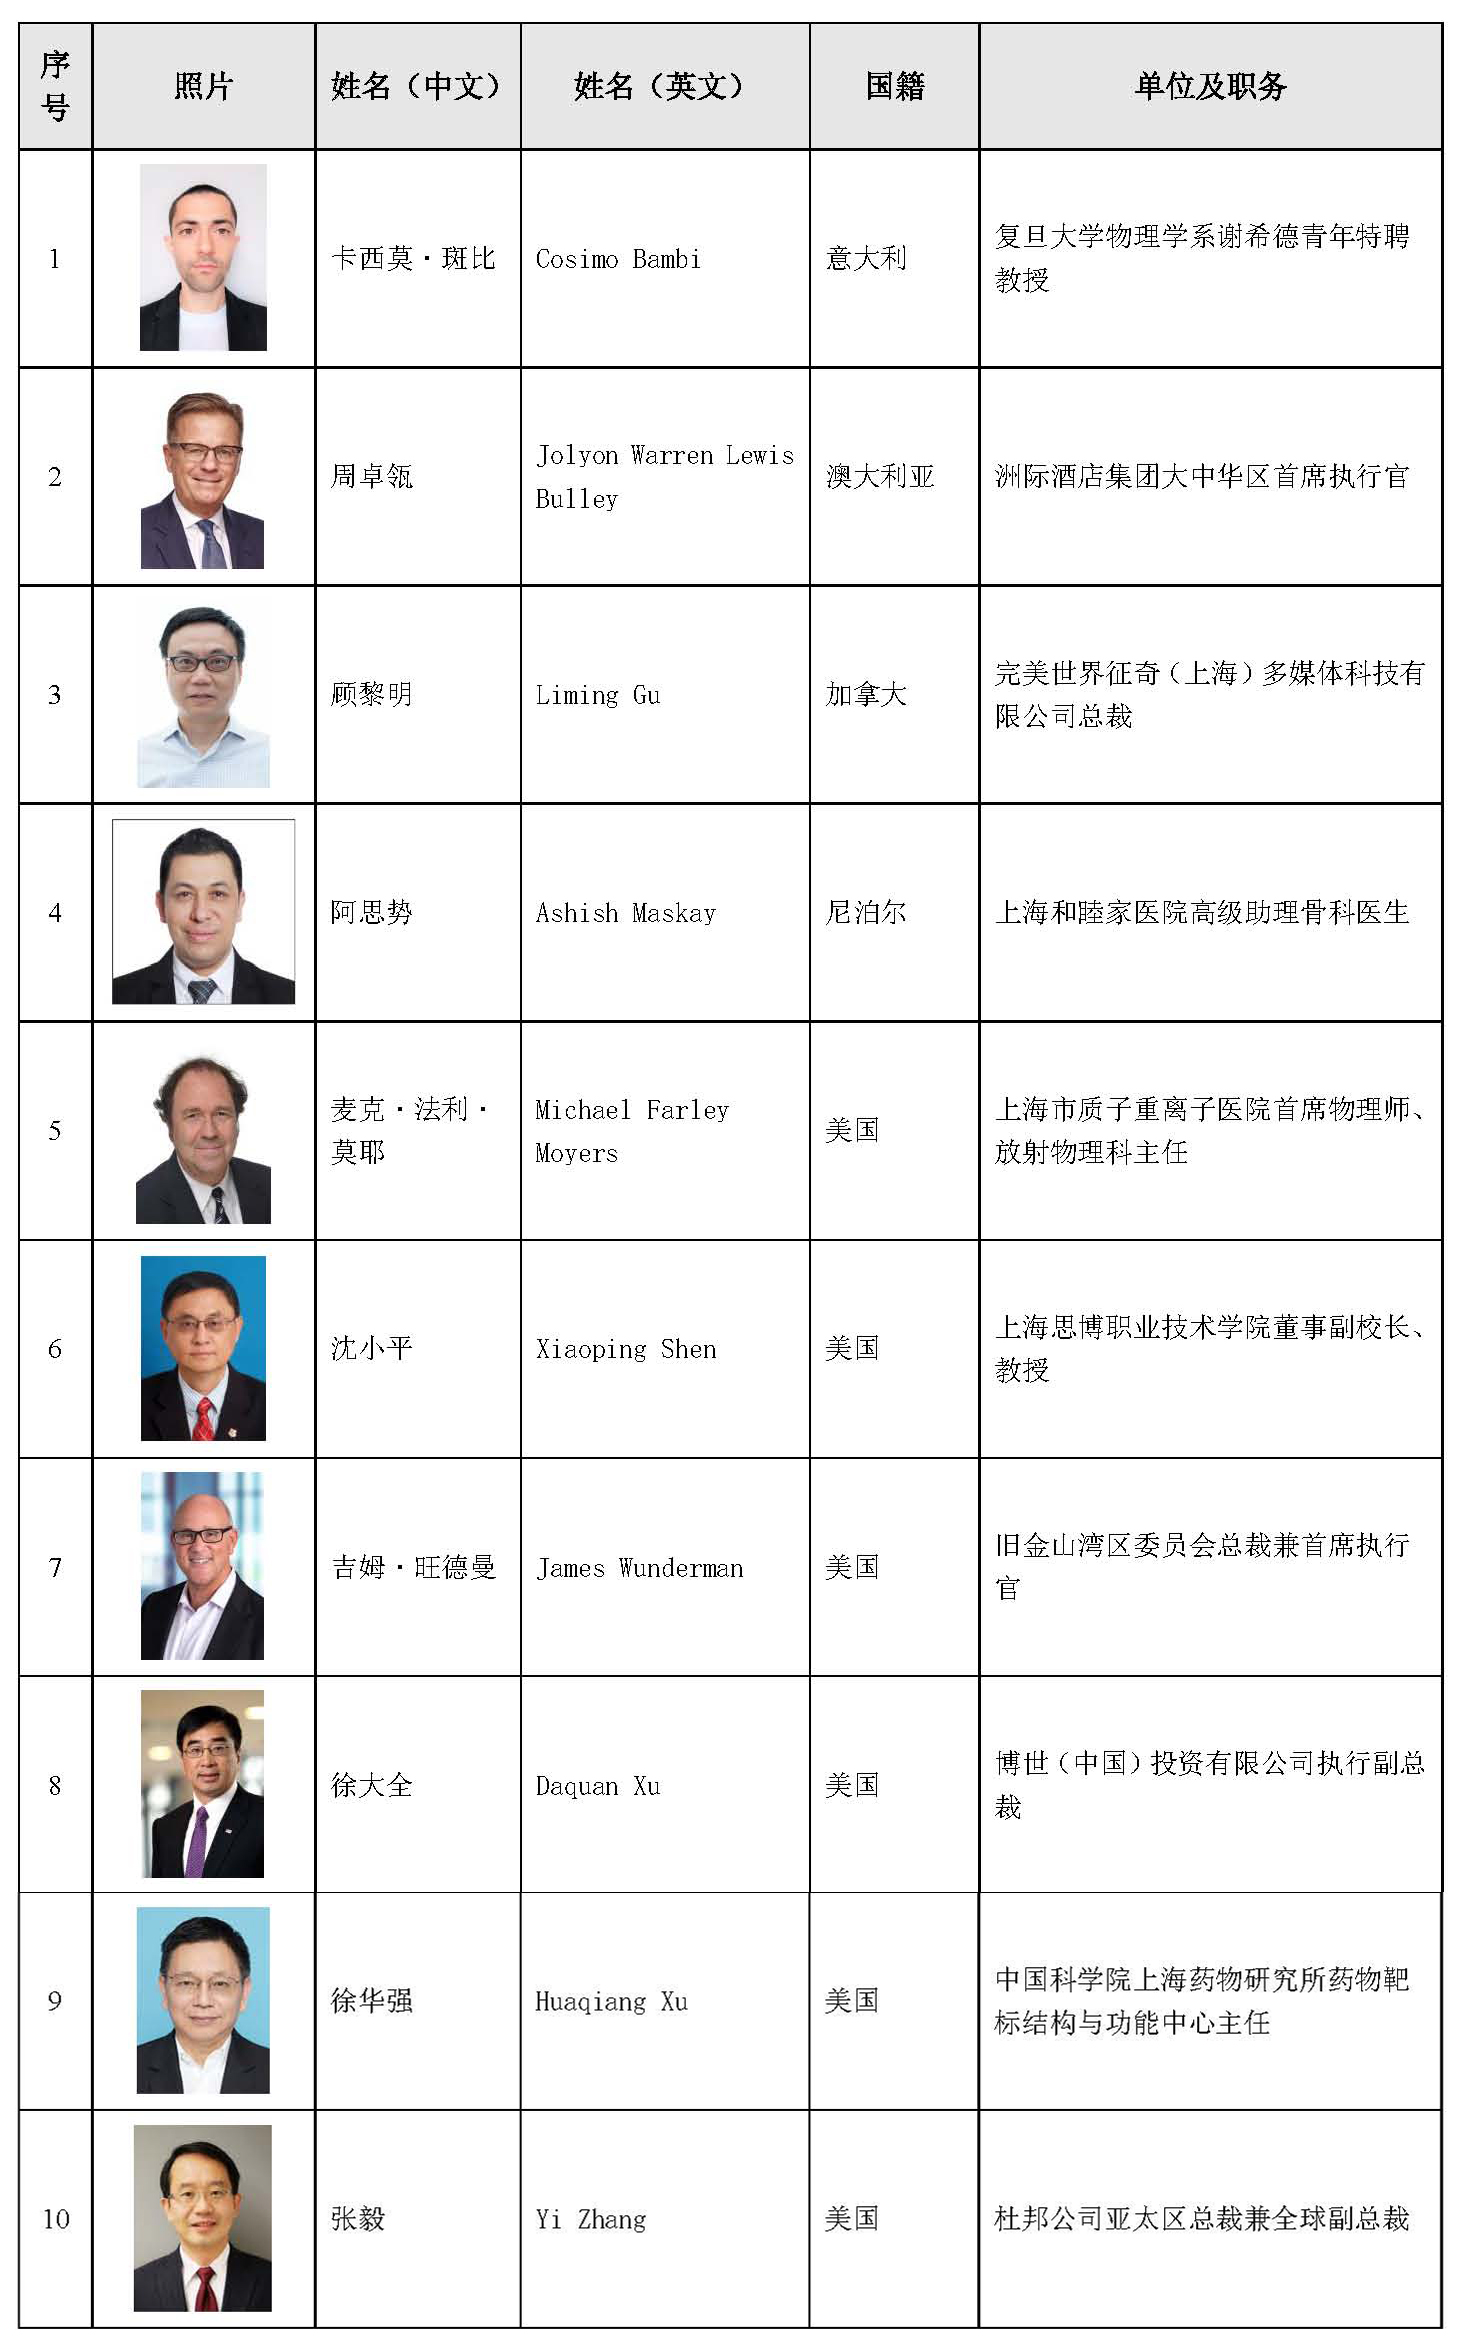 祝贺上海高等研究院上海光源数据中心首席科学家亚历山德罗·塞佩博士荣获2022年度上海市“白玉兰纪念奖”----中国科学院上海分院